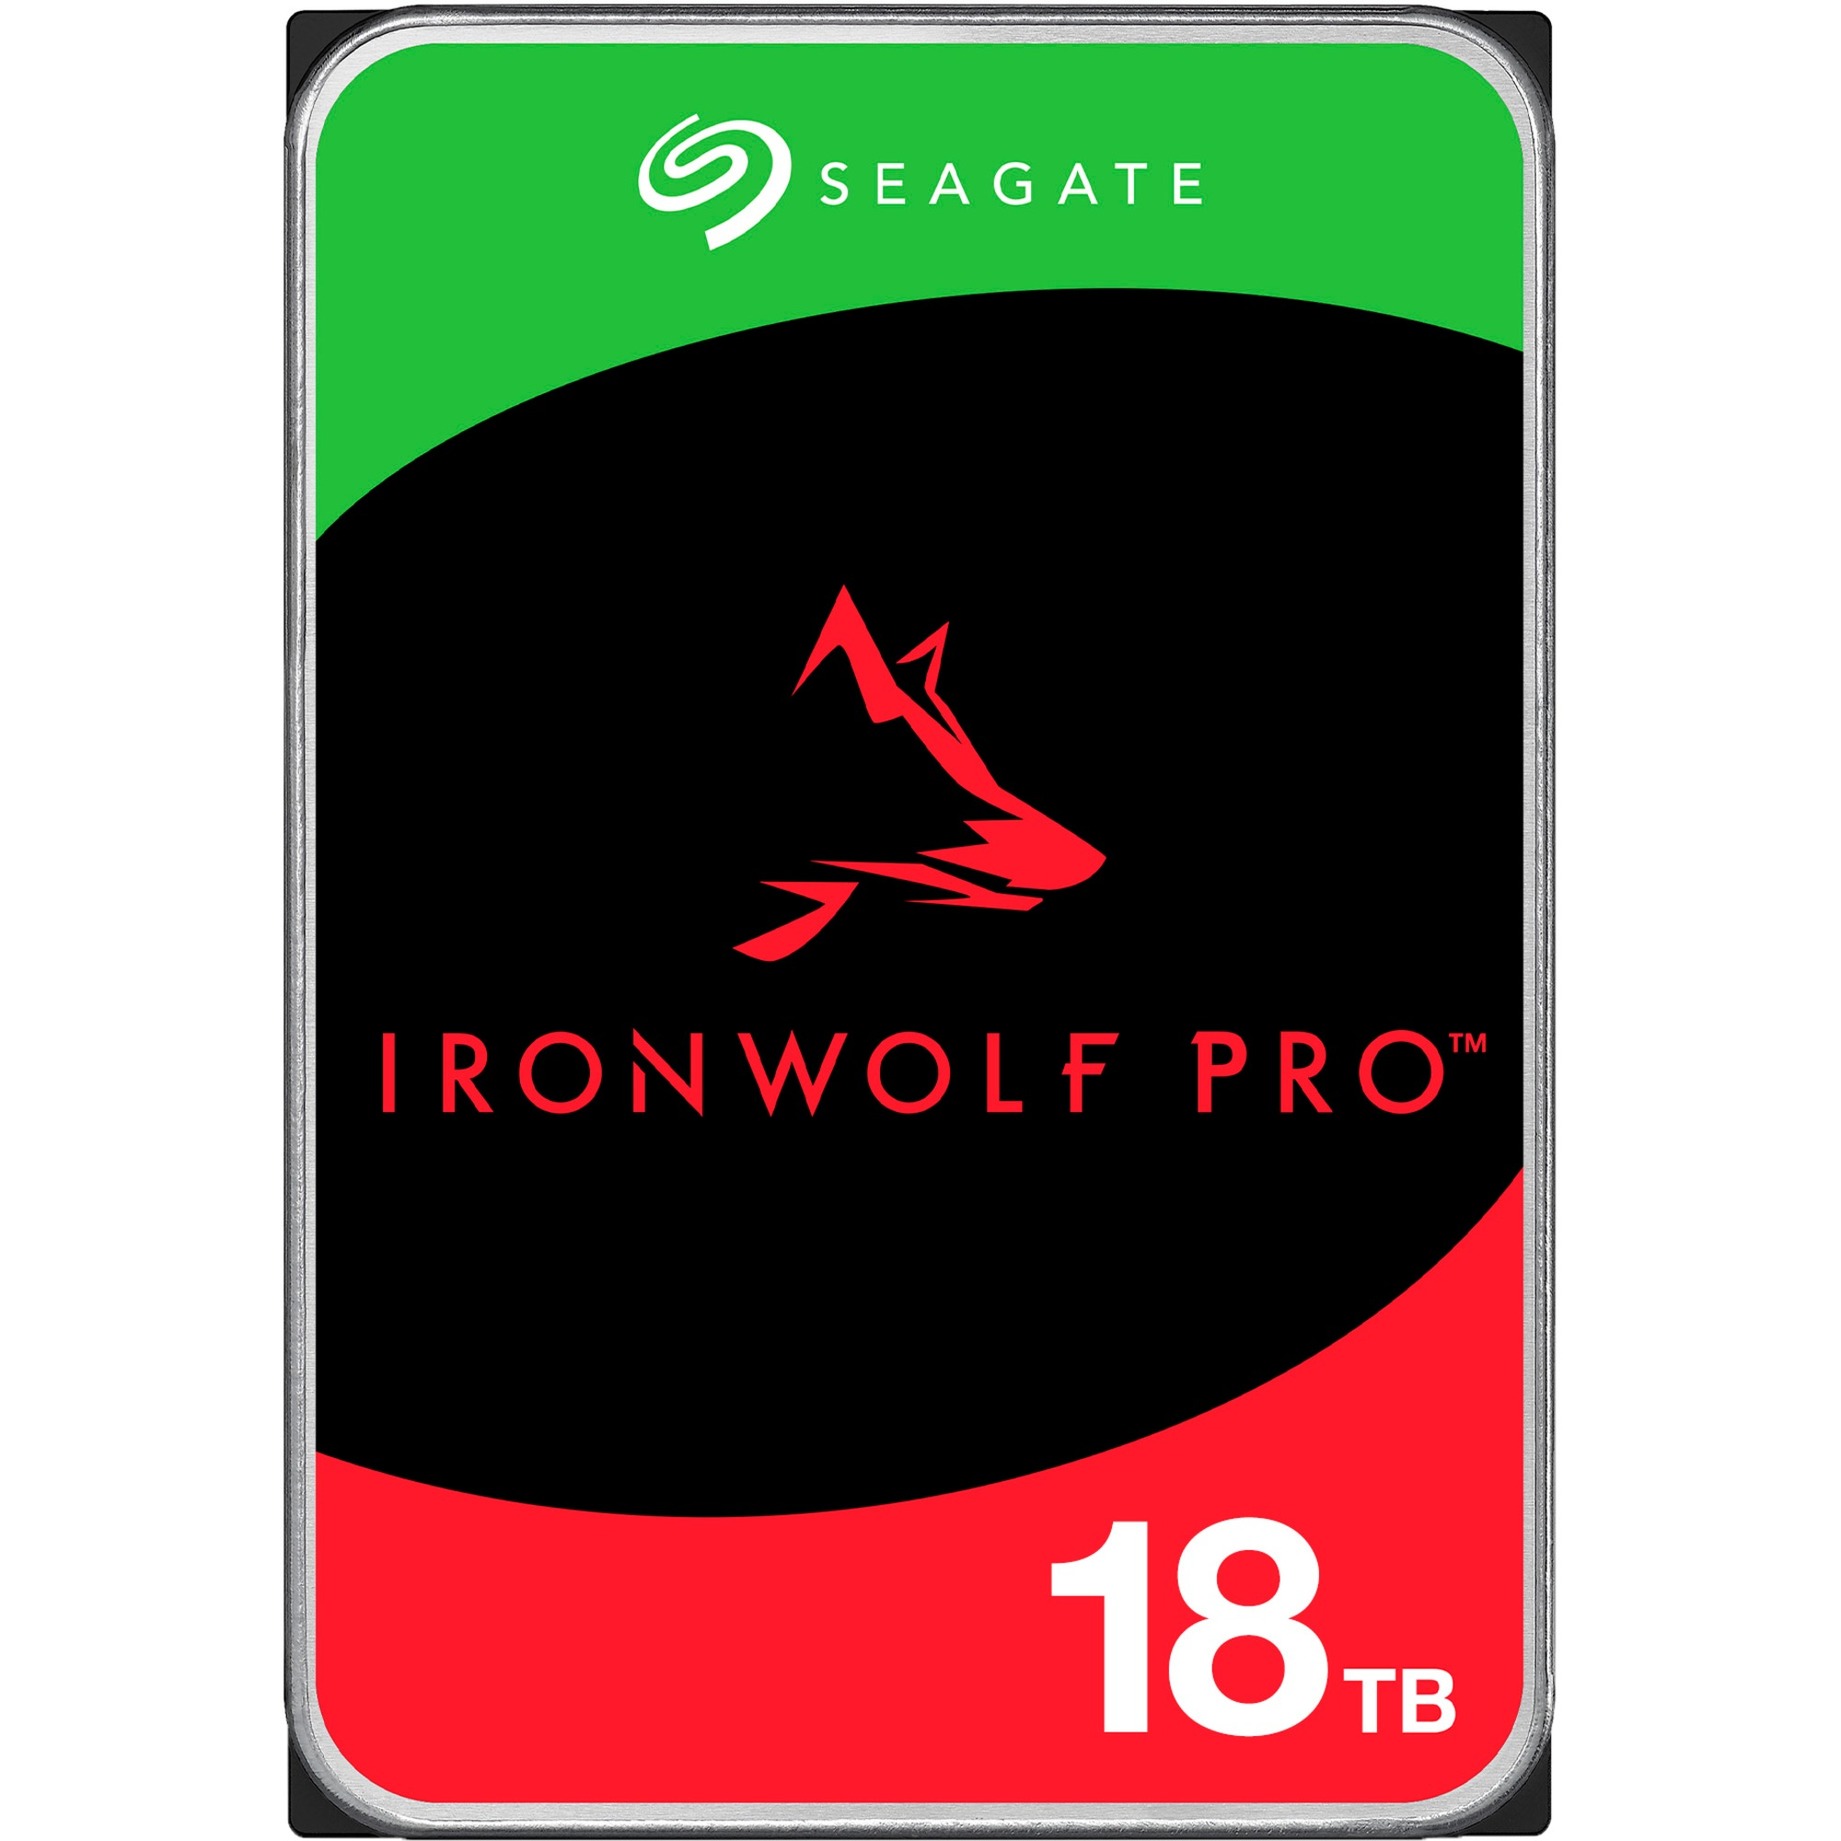 IronWolf Pro NAS 18 TB CMR, Festplatte von Seagate